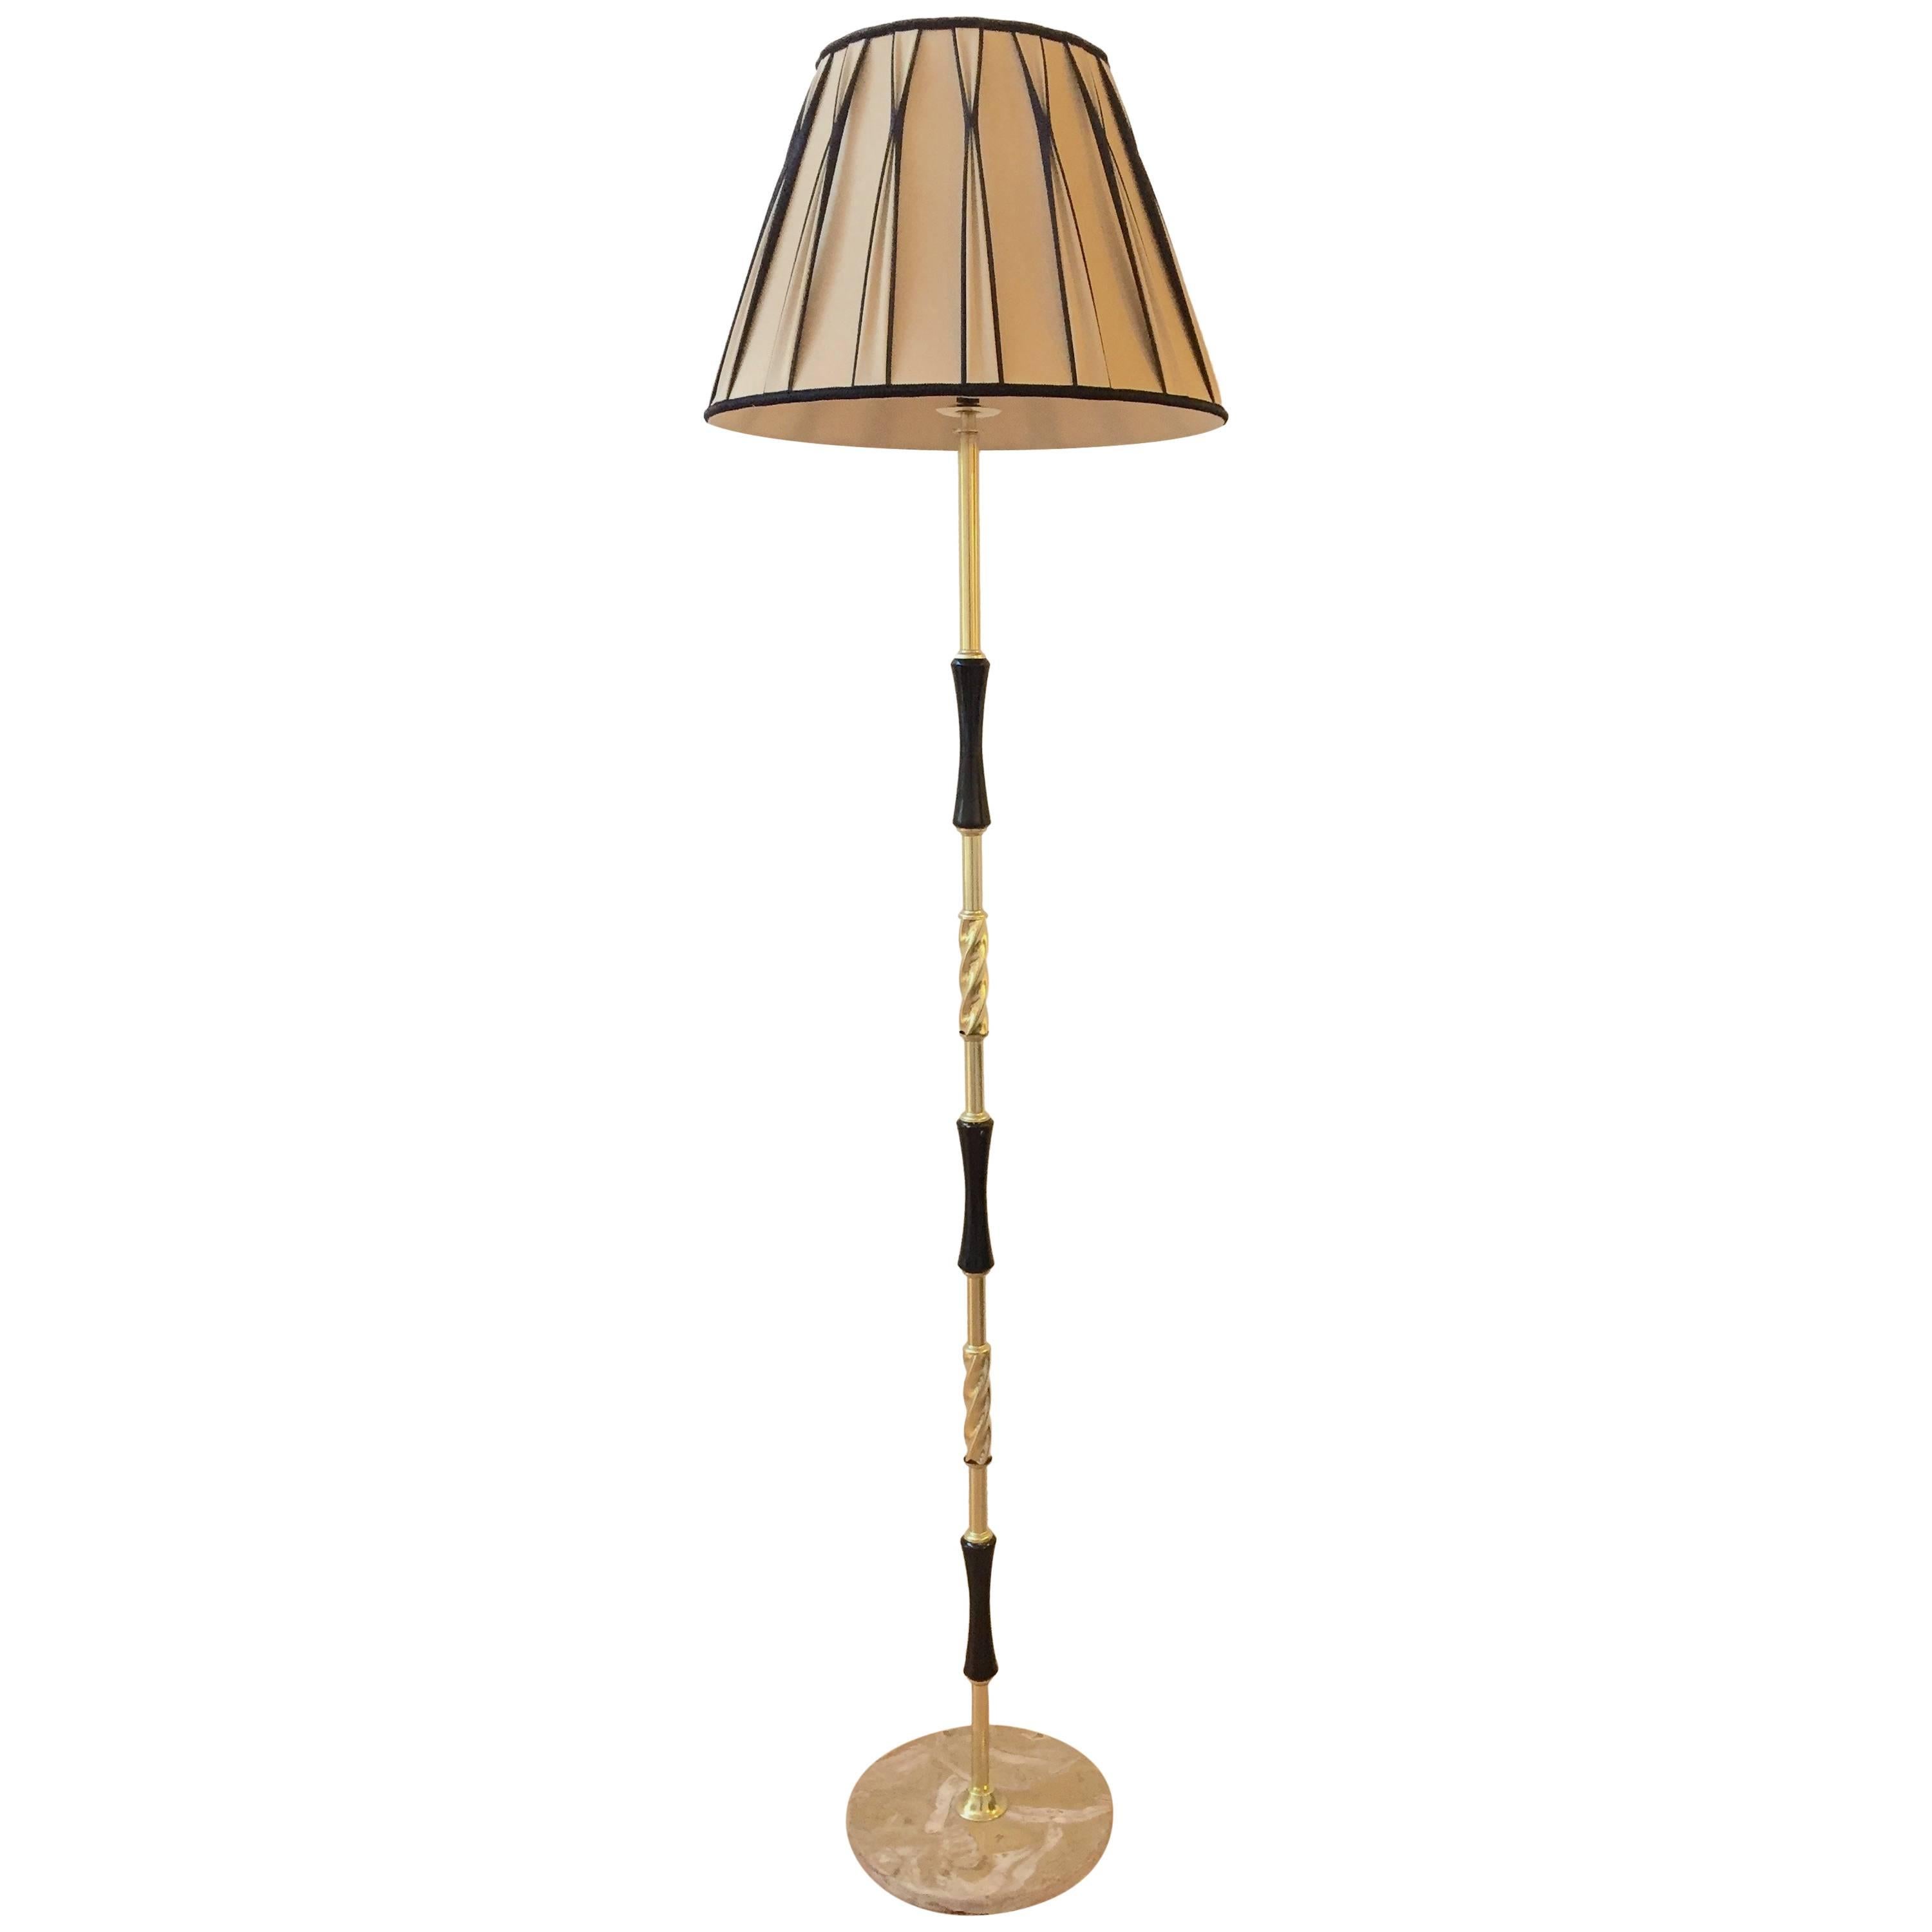 Italian Mid-Century Floor Lamp